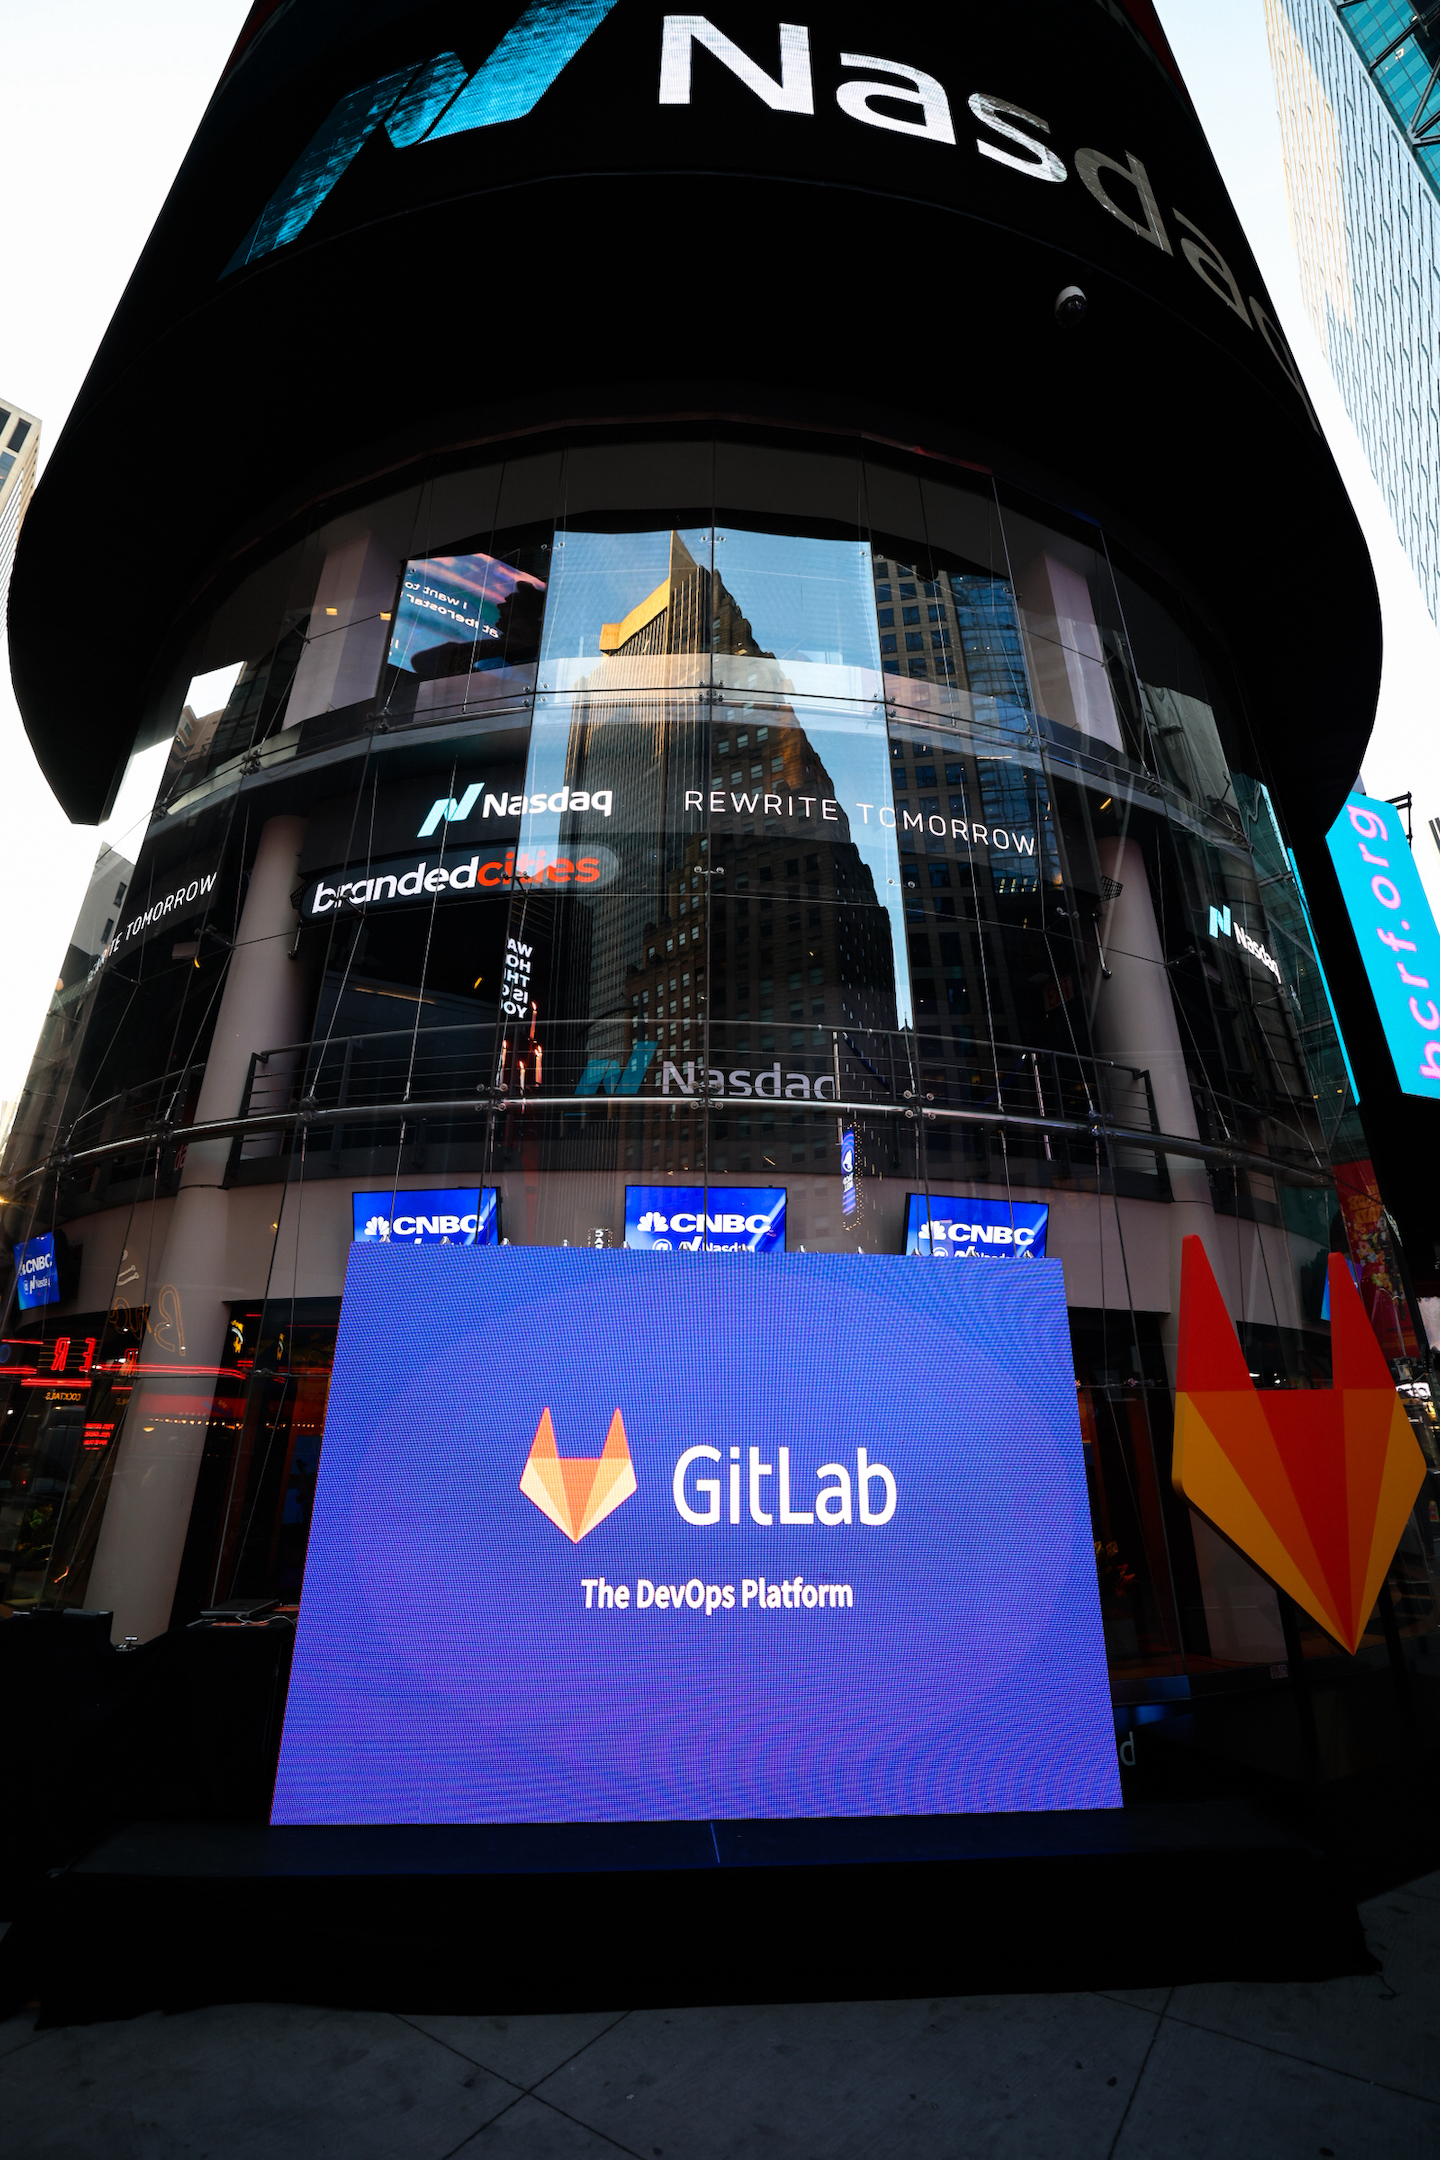 GitLab branding in NYC